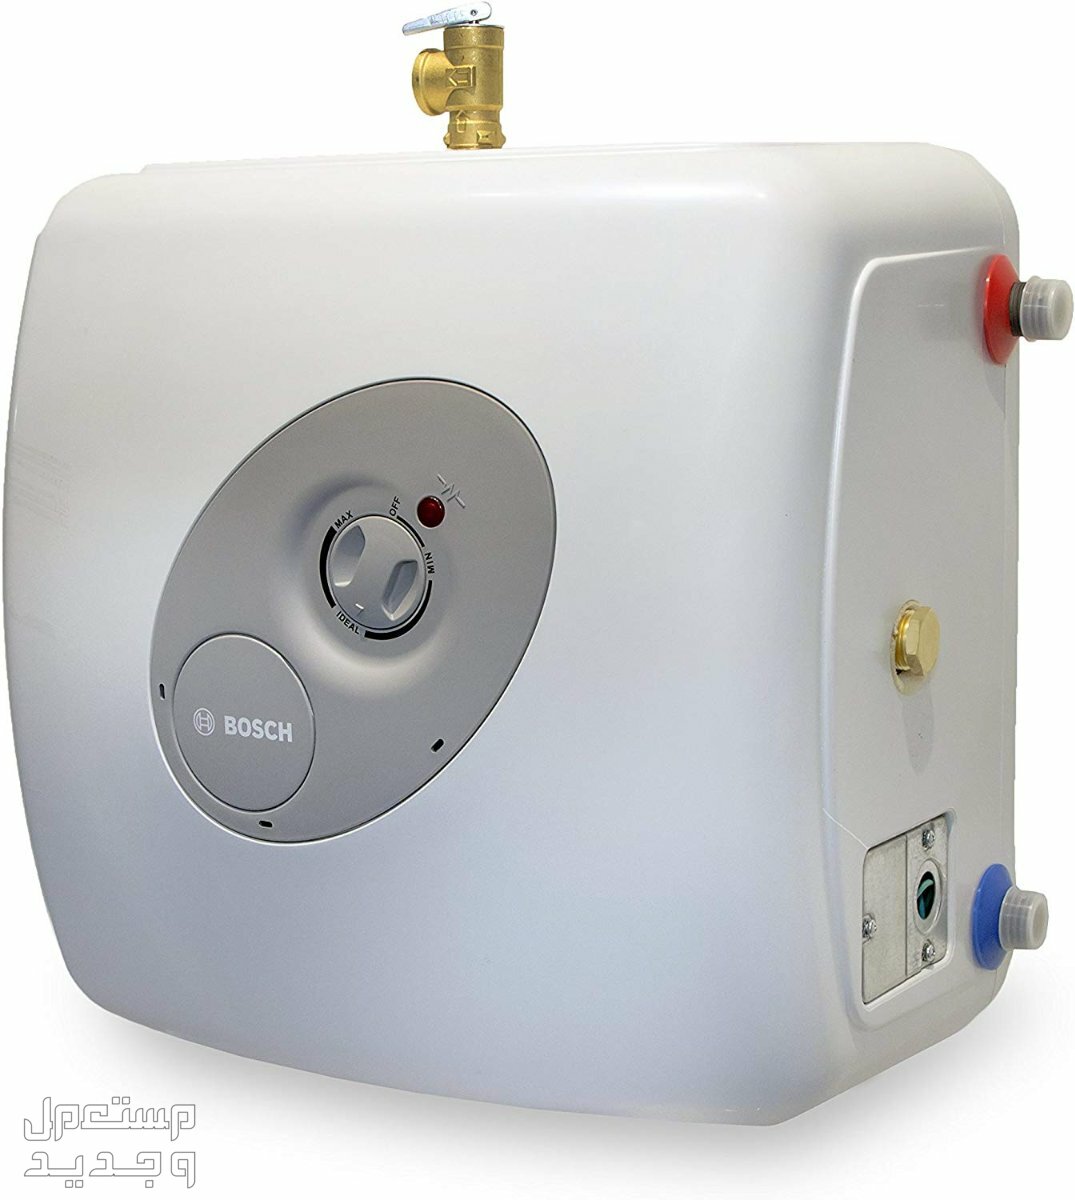 تعرف على أكثر 15 جهاز استهلاكاً للكهرباء سخان الماء الكهربائي Heater